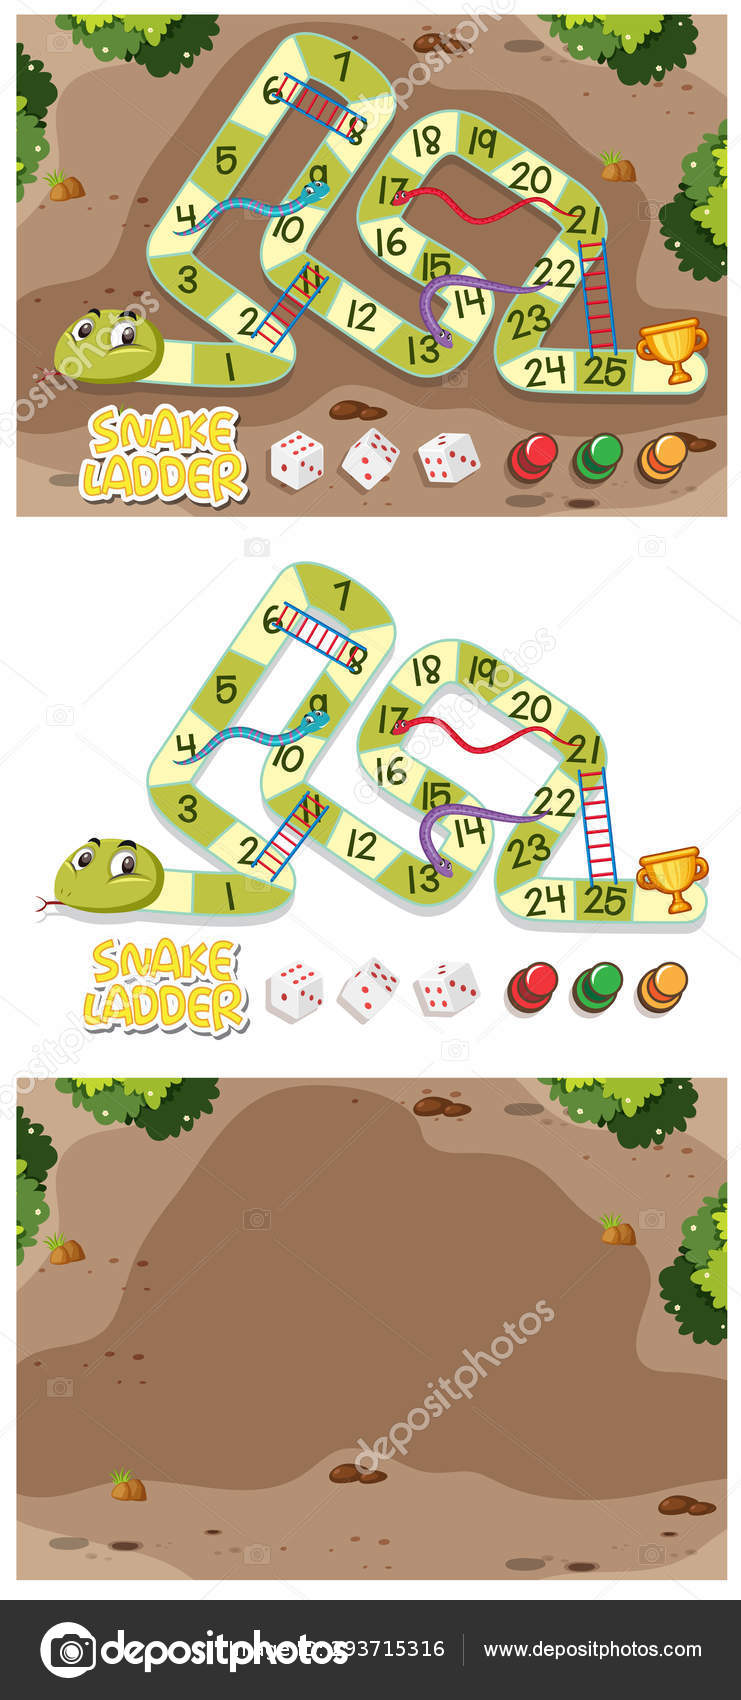 Cobras e escadas jogo com cobra verde imagem vetorial de brgfx© 293717442